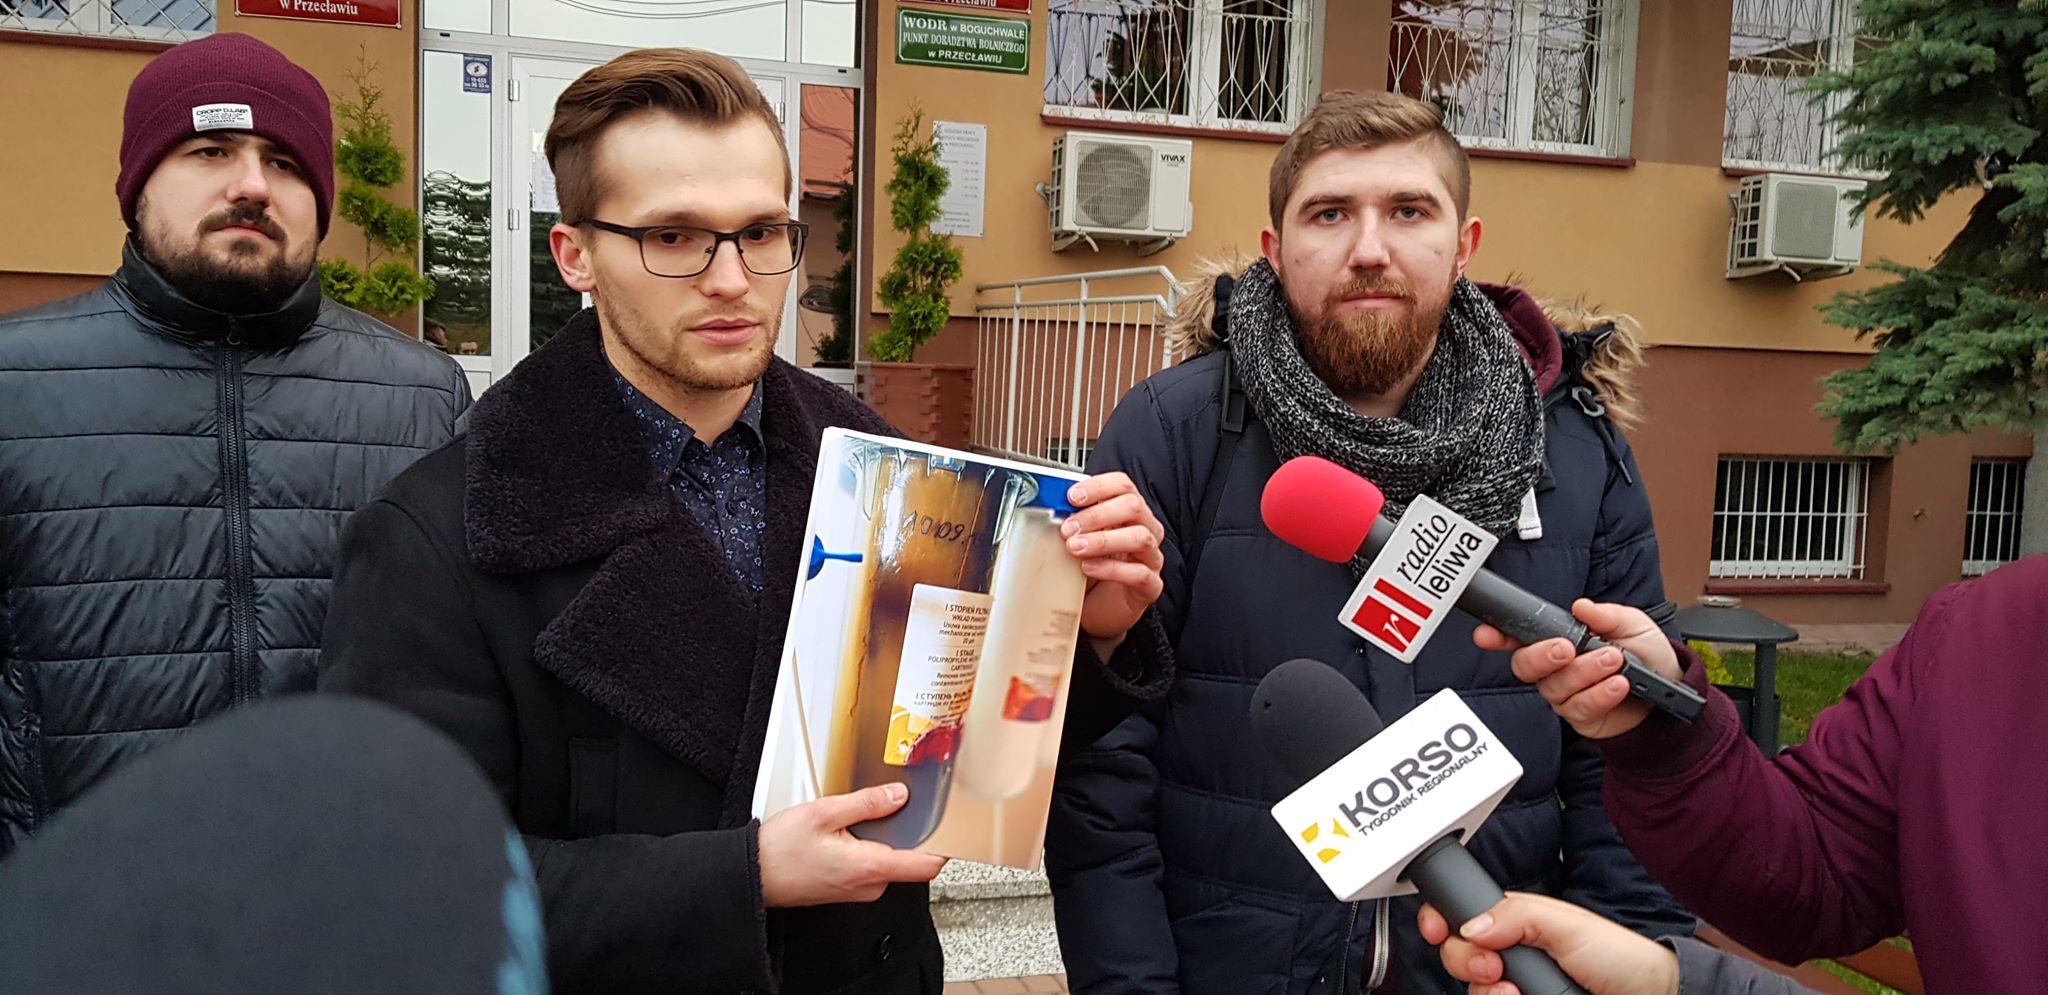 Spontaniczna manifestacja w Przecławiu. Mieszkańcy gminy domagają się naprawy sieci wody! [VIDEO]   - Zdjęcie główne